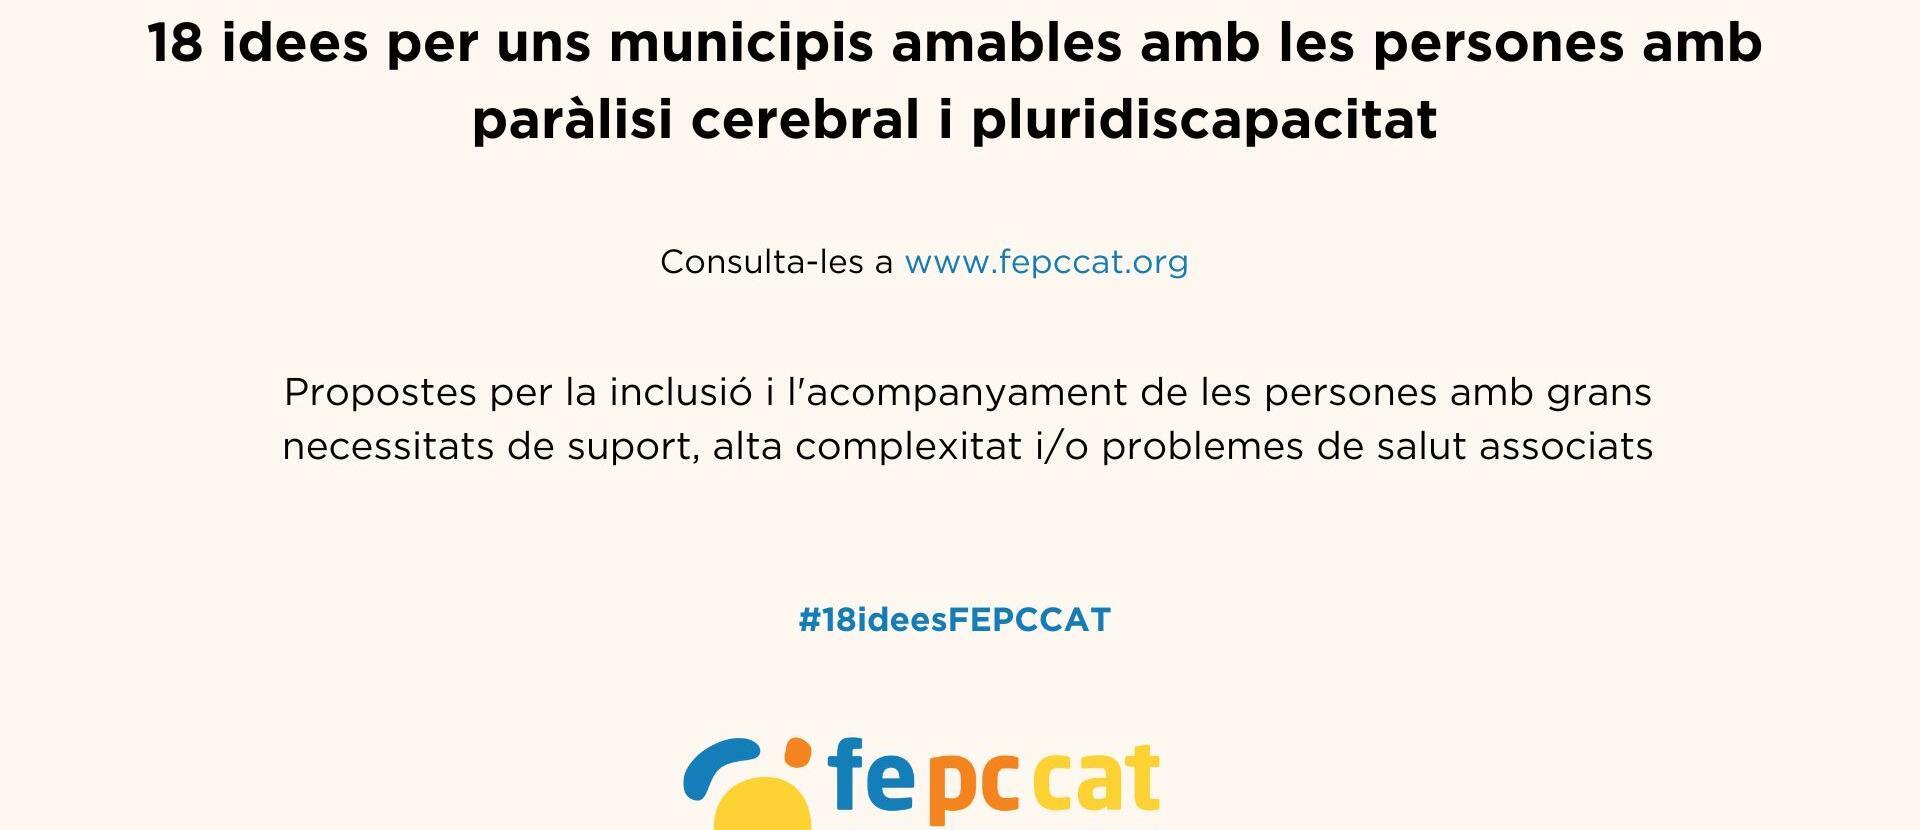 Peticions de la Federació de la Paràlisi Cerebral i la Pluridiscapacitat de Catalunya als partits polítics